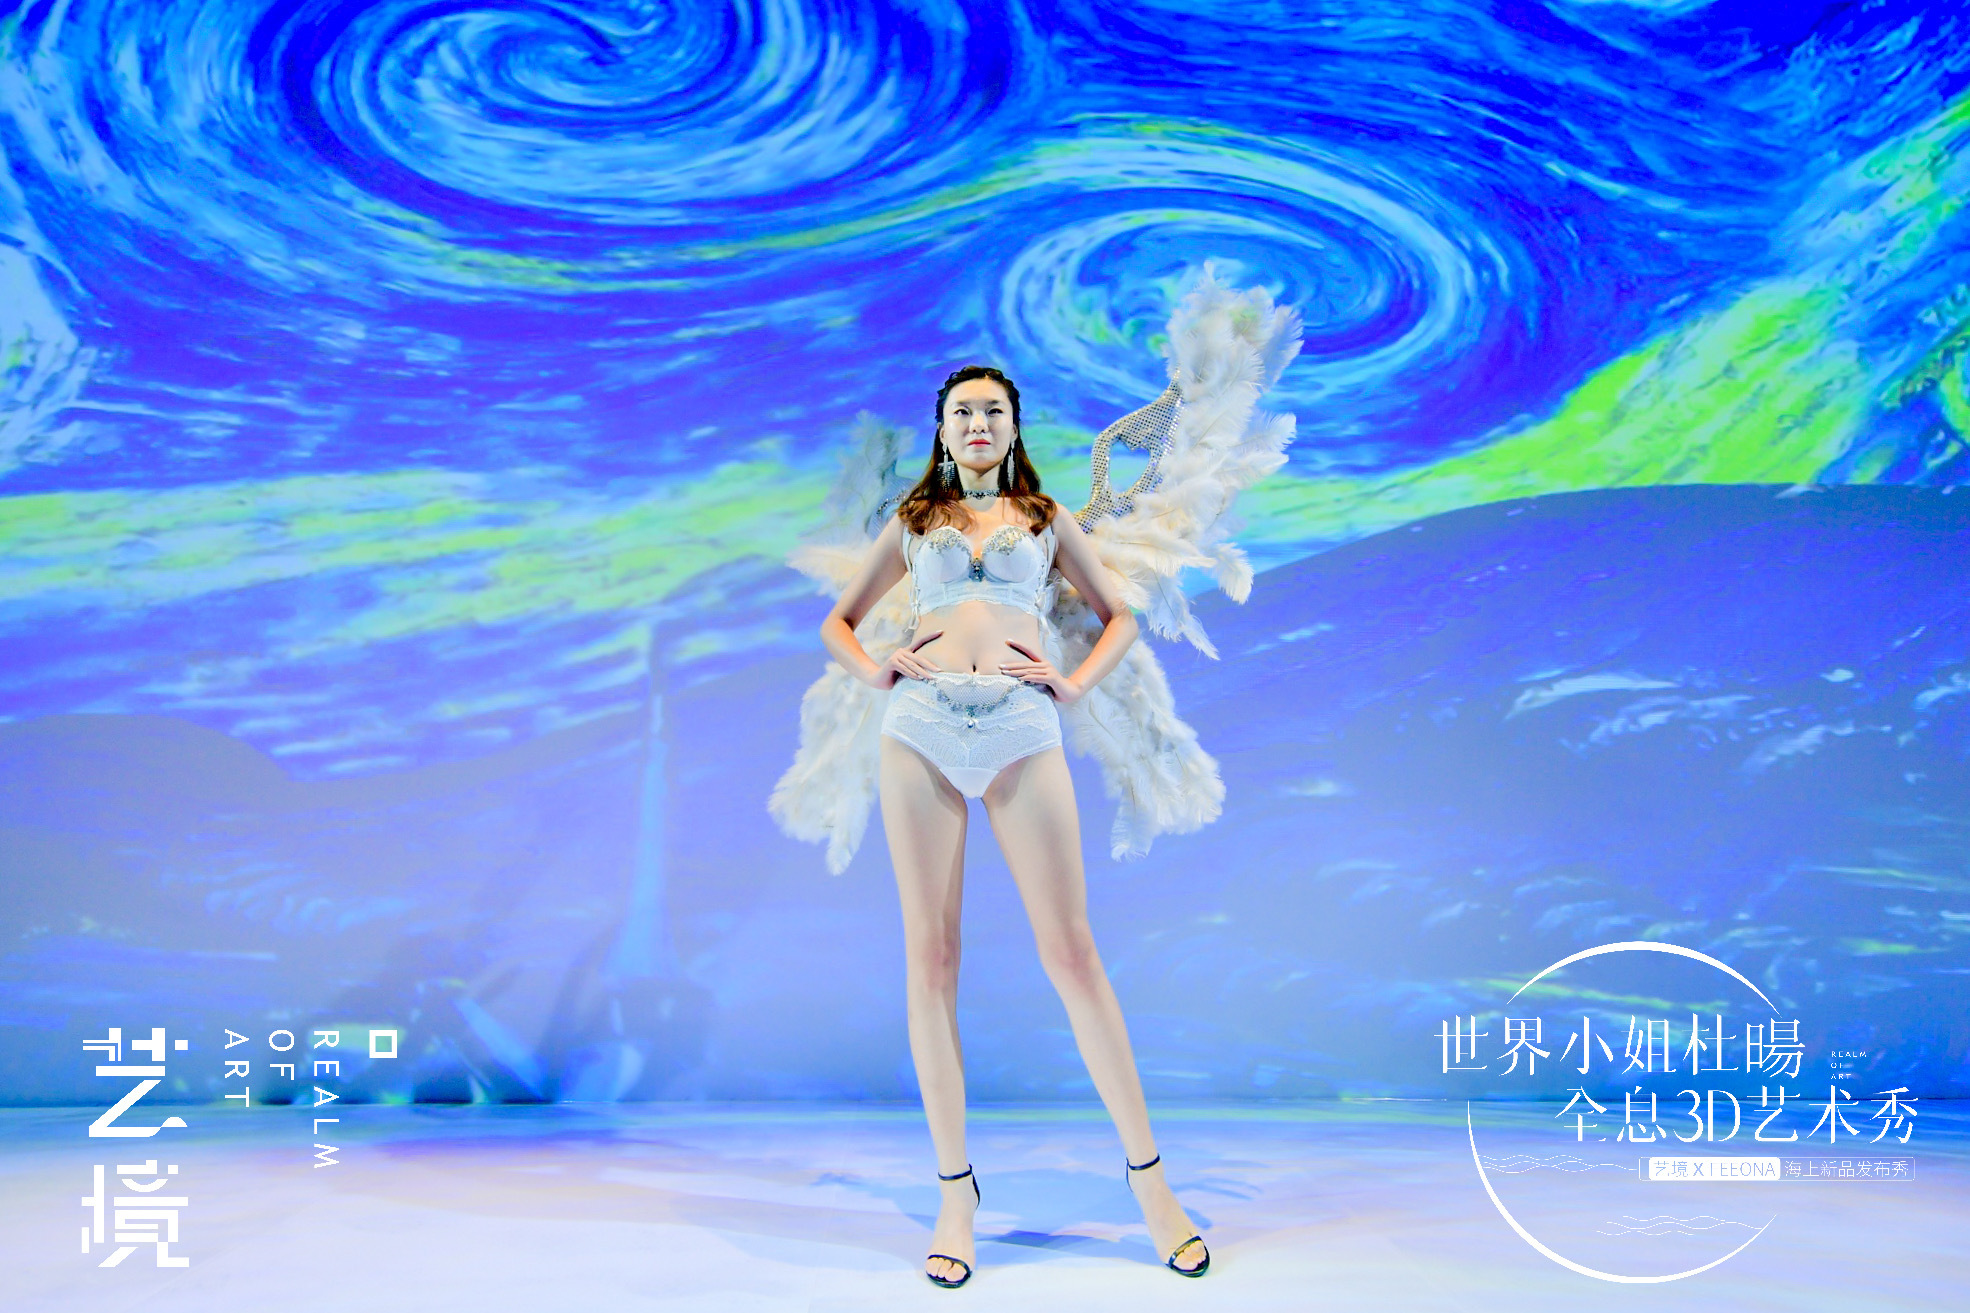 艺境大美绽放 世界小姐杜暘上演全息3D艺术秀